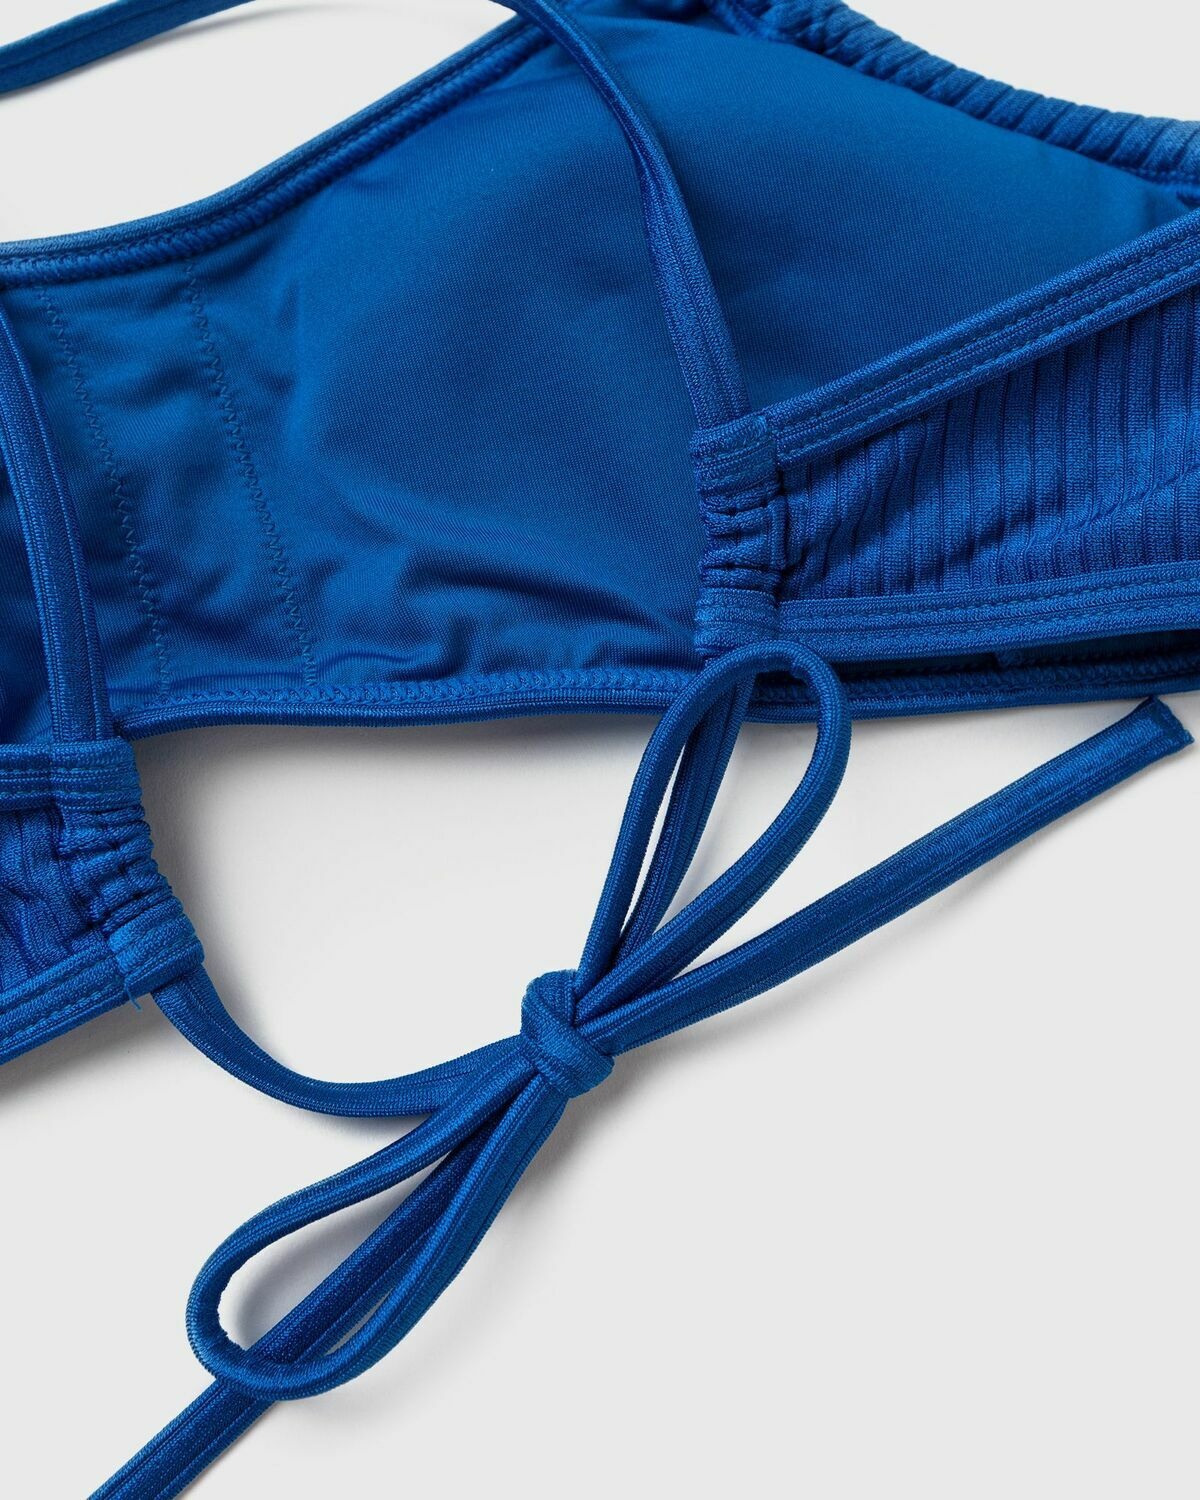 Calvin Klein Underwear Bralette Blue - Womens - Swimwear Calvin Klein ...